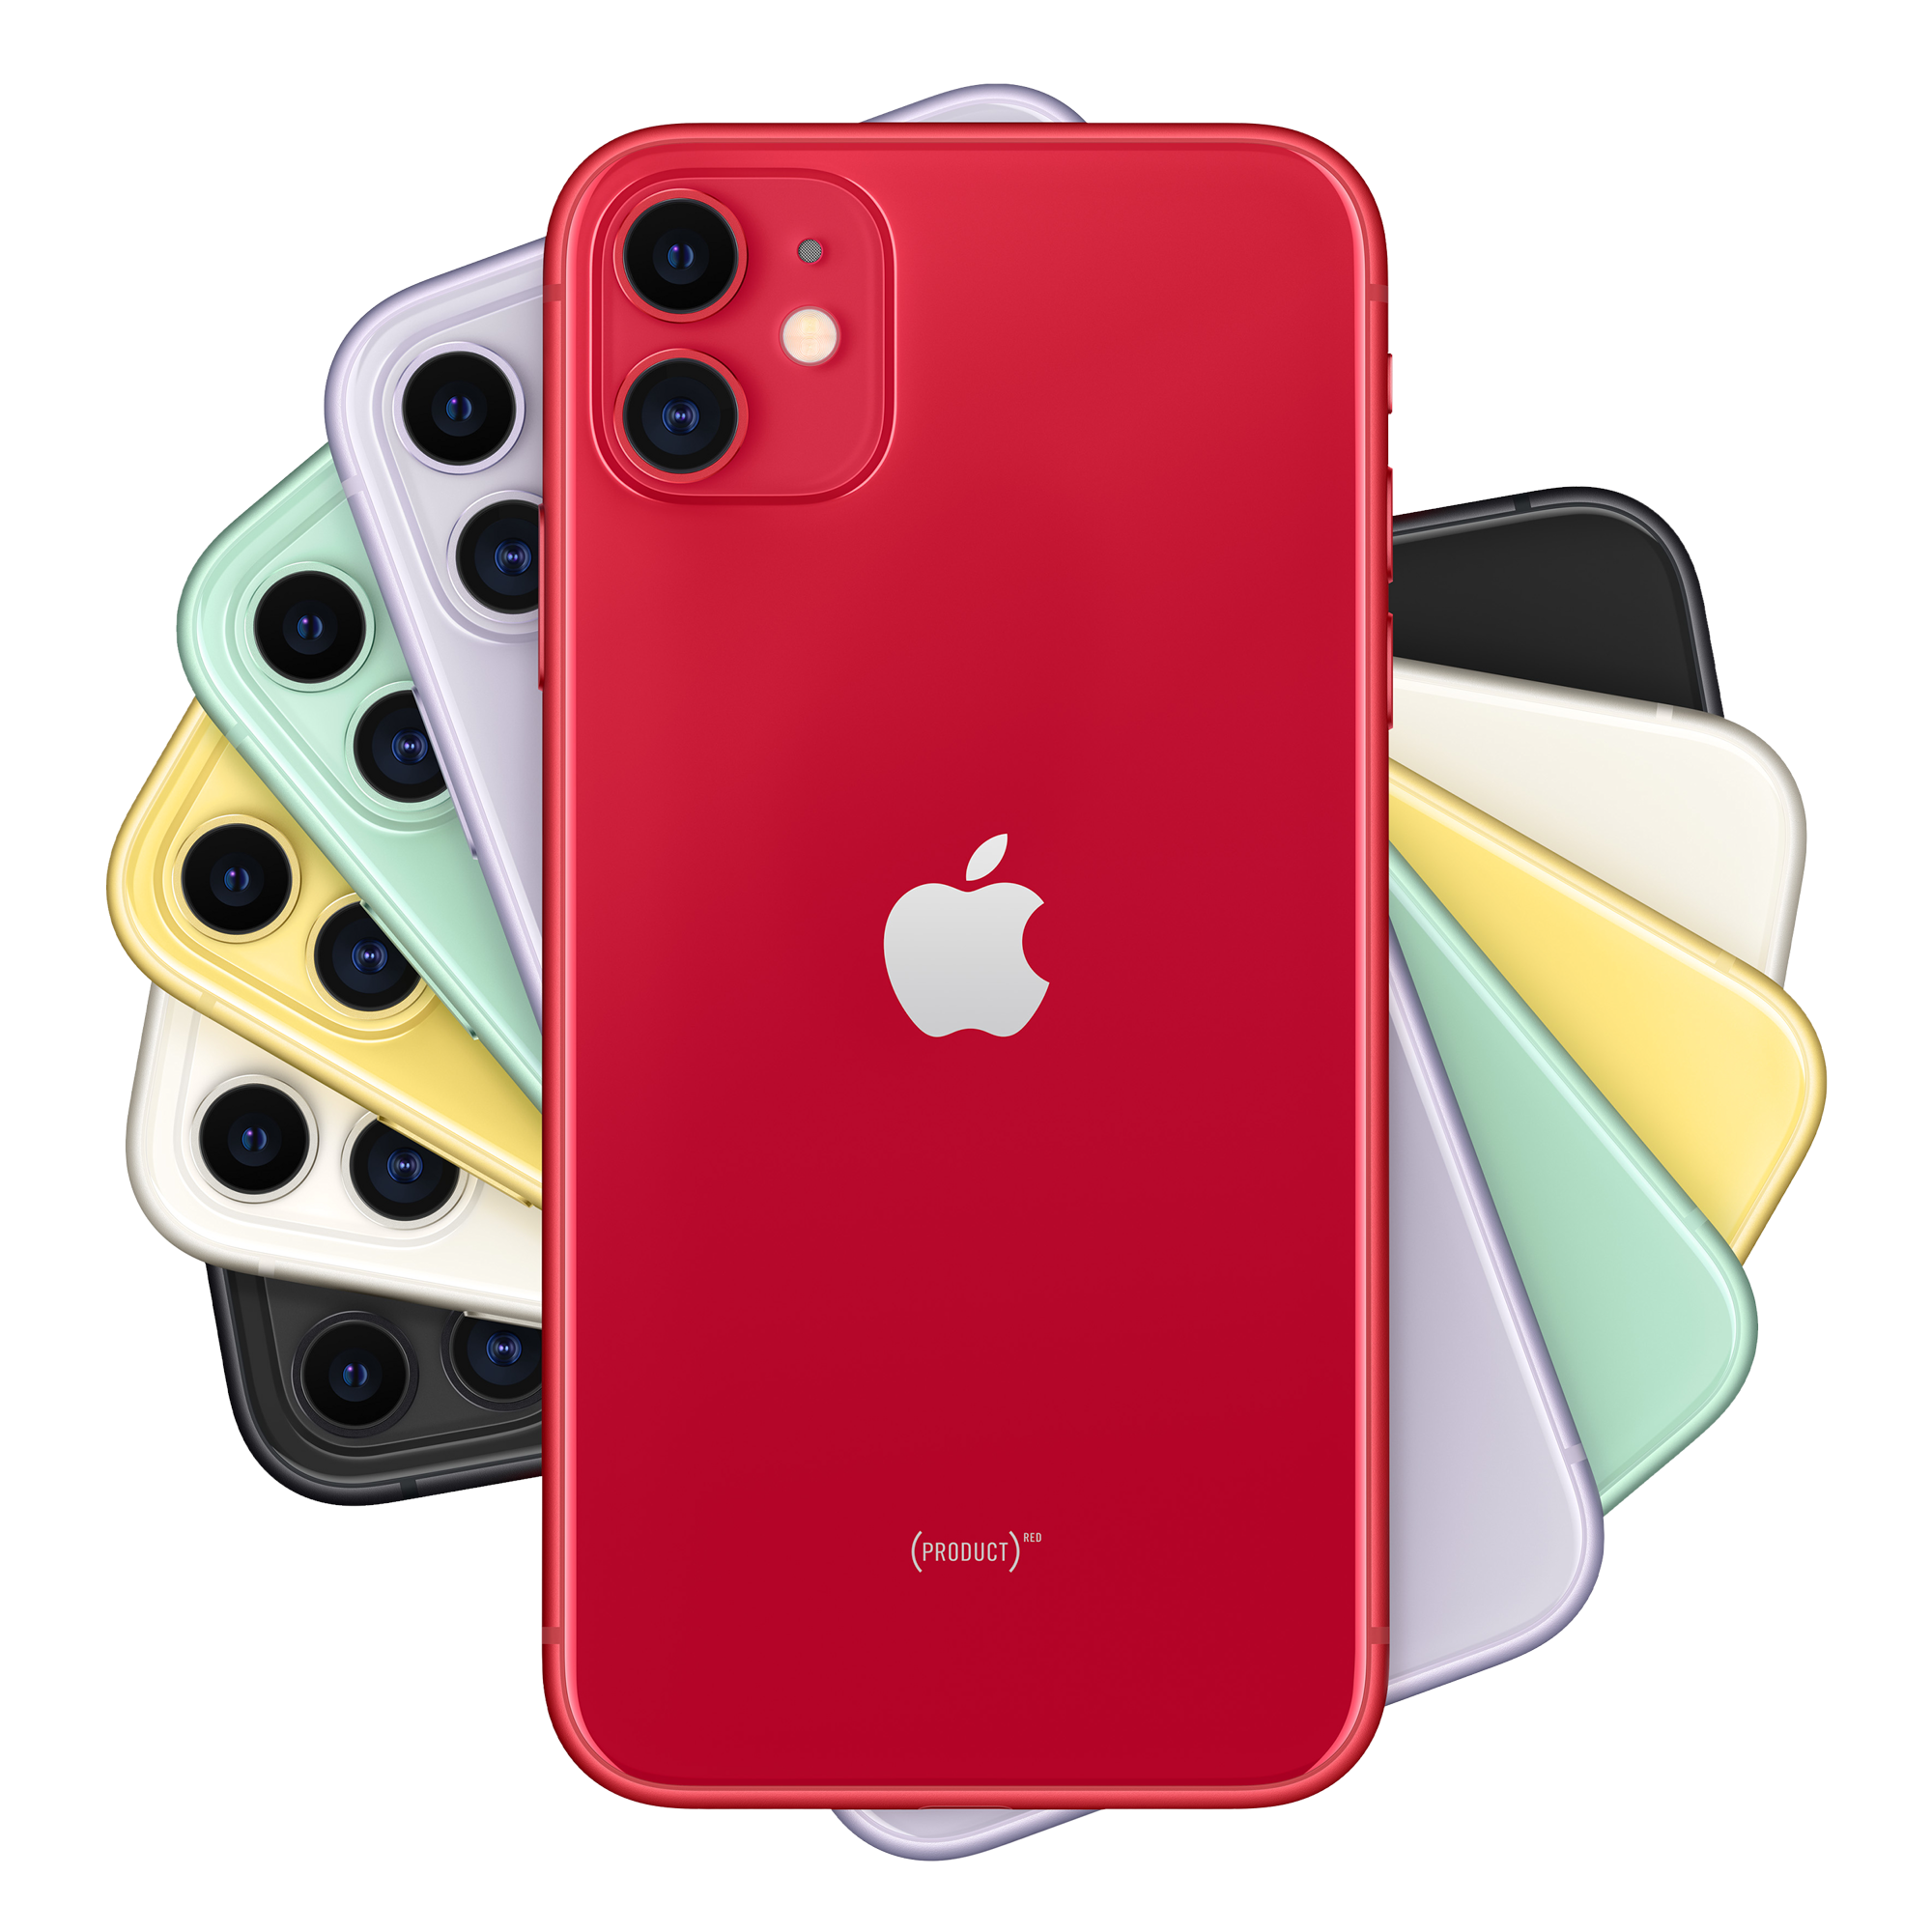 Refurbished iPhone 11 64GB rood kopen? 2 jaar garantie! | FixjeiPhone.nl